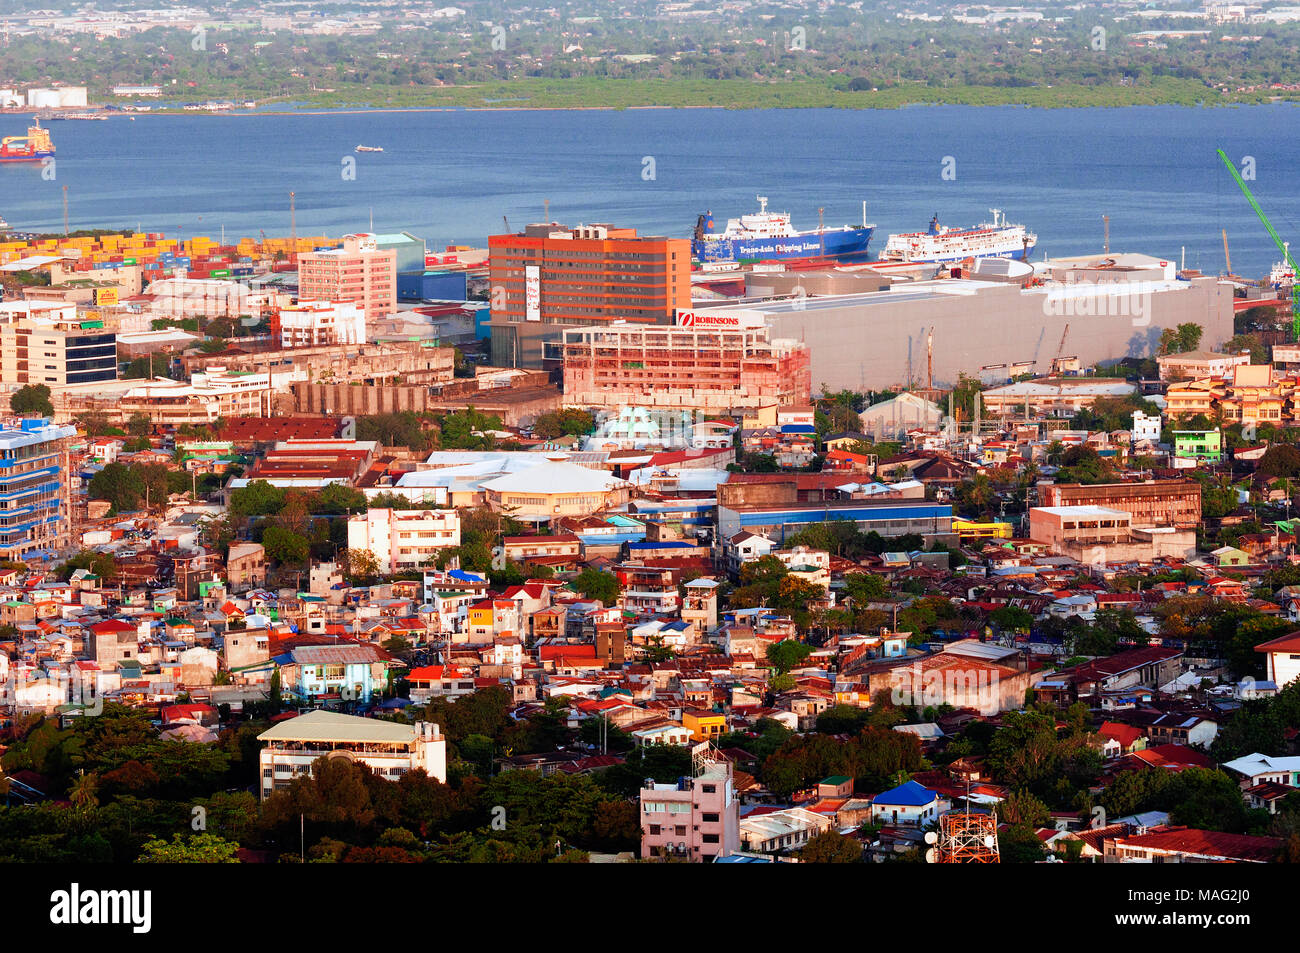 Vista aérea de la ciudad de Cebu mirando al noreste, con el puerto, Robinsons Galleria Mall, y más allá del Canal de Mactan, Filipinas Foto de stock